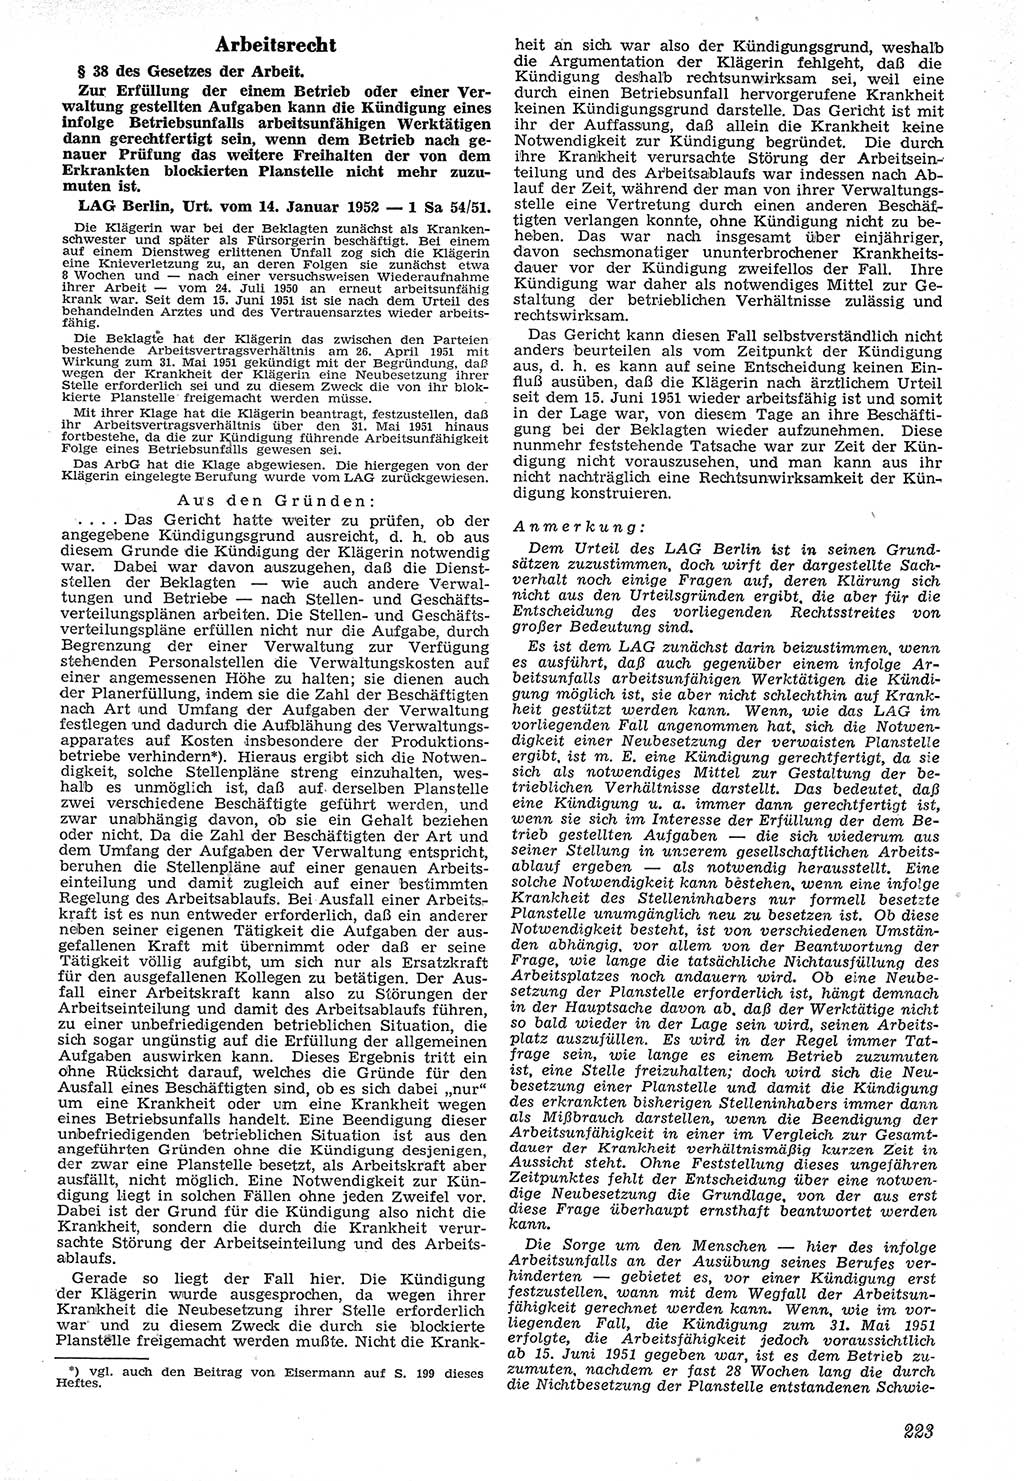 Neue Justiz (NJ), Zeitschrift für Recht und Rechtswissenschaft [Deutsche Demokratische Republik (DDR)], 7. Jahrgang 1953, Seite 223 (NJ DDR 1953, S. 223)